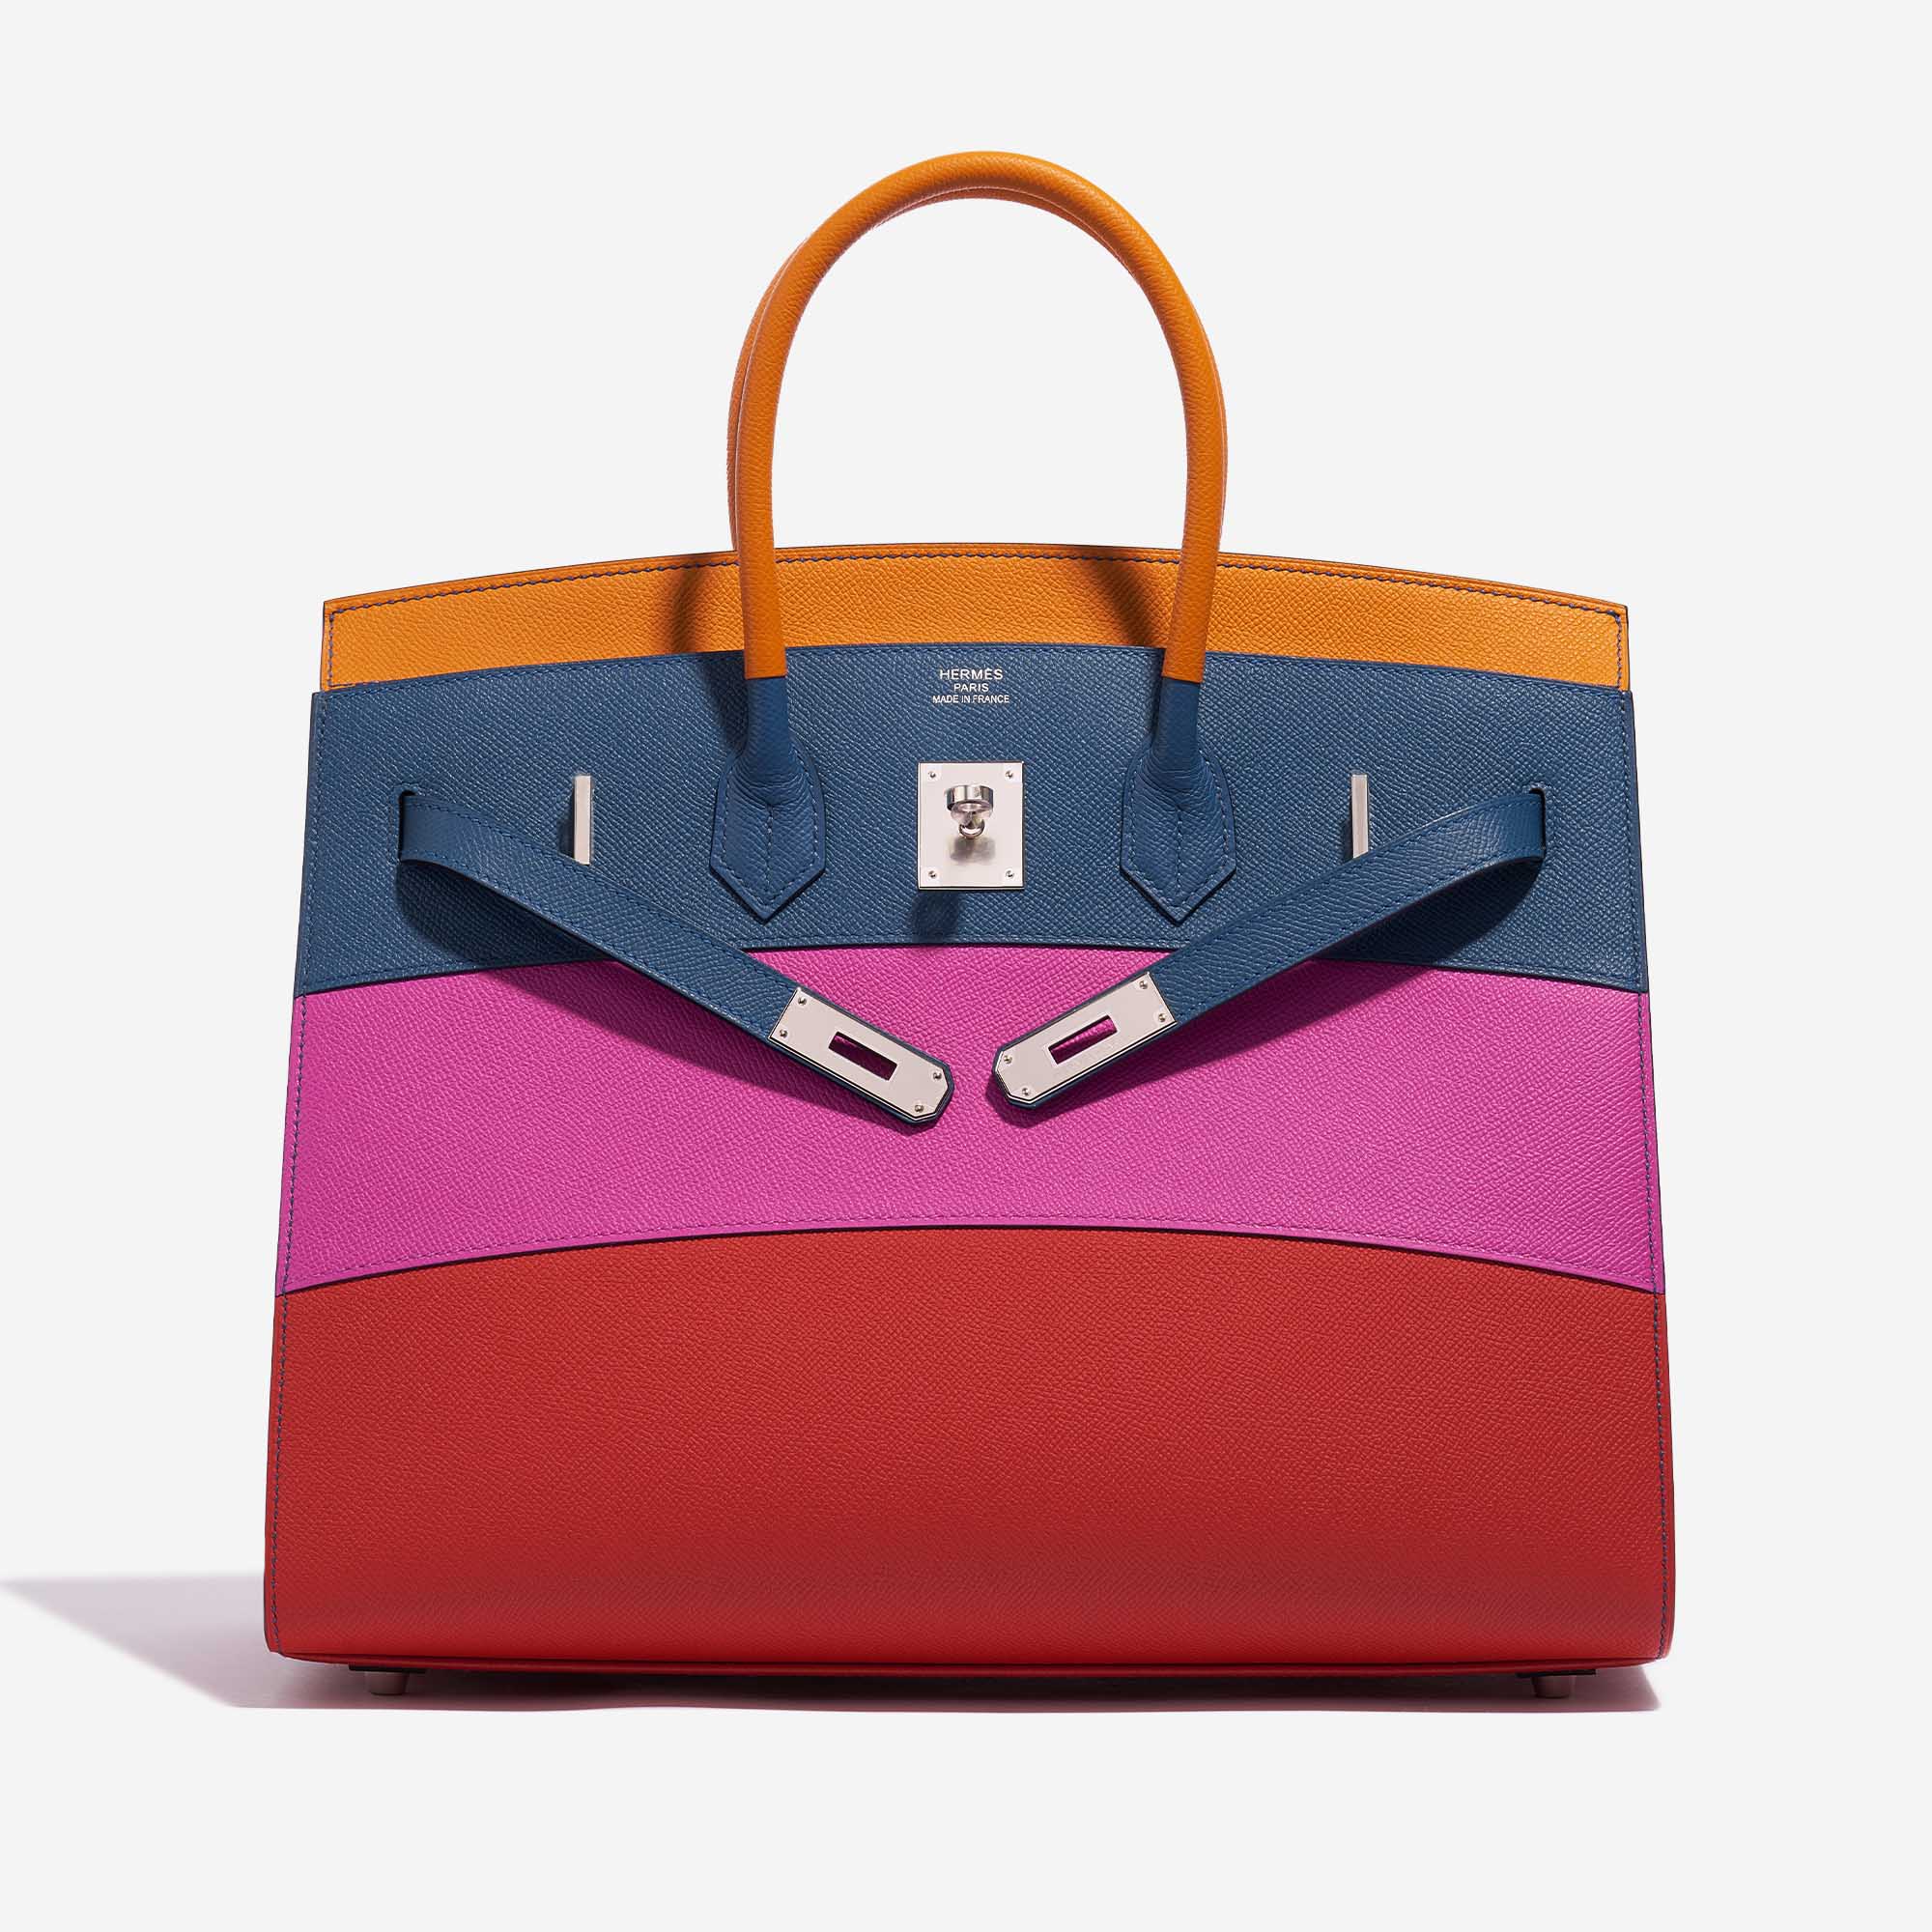 Gebrauchte Hermès Tasche Birkin 35 Sunset Rainbow Epsom Apricot / Blue Achat / Magnolia / Rouge Casaque Multicolour Front Open | Verkaufen Sie Ihre Designer-Tasche auf Saclab.com